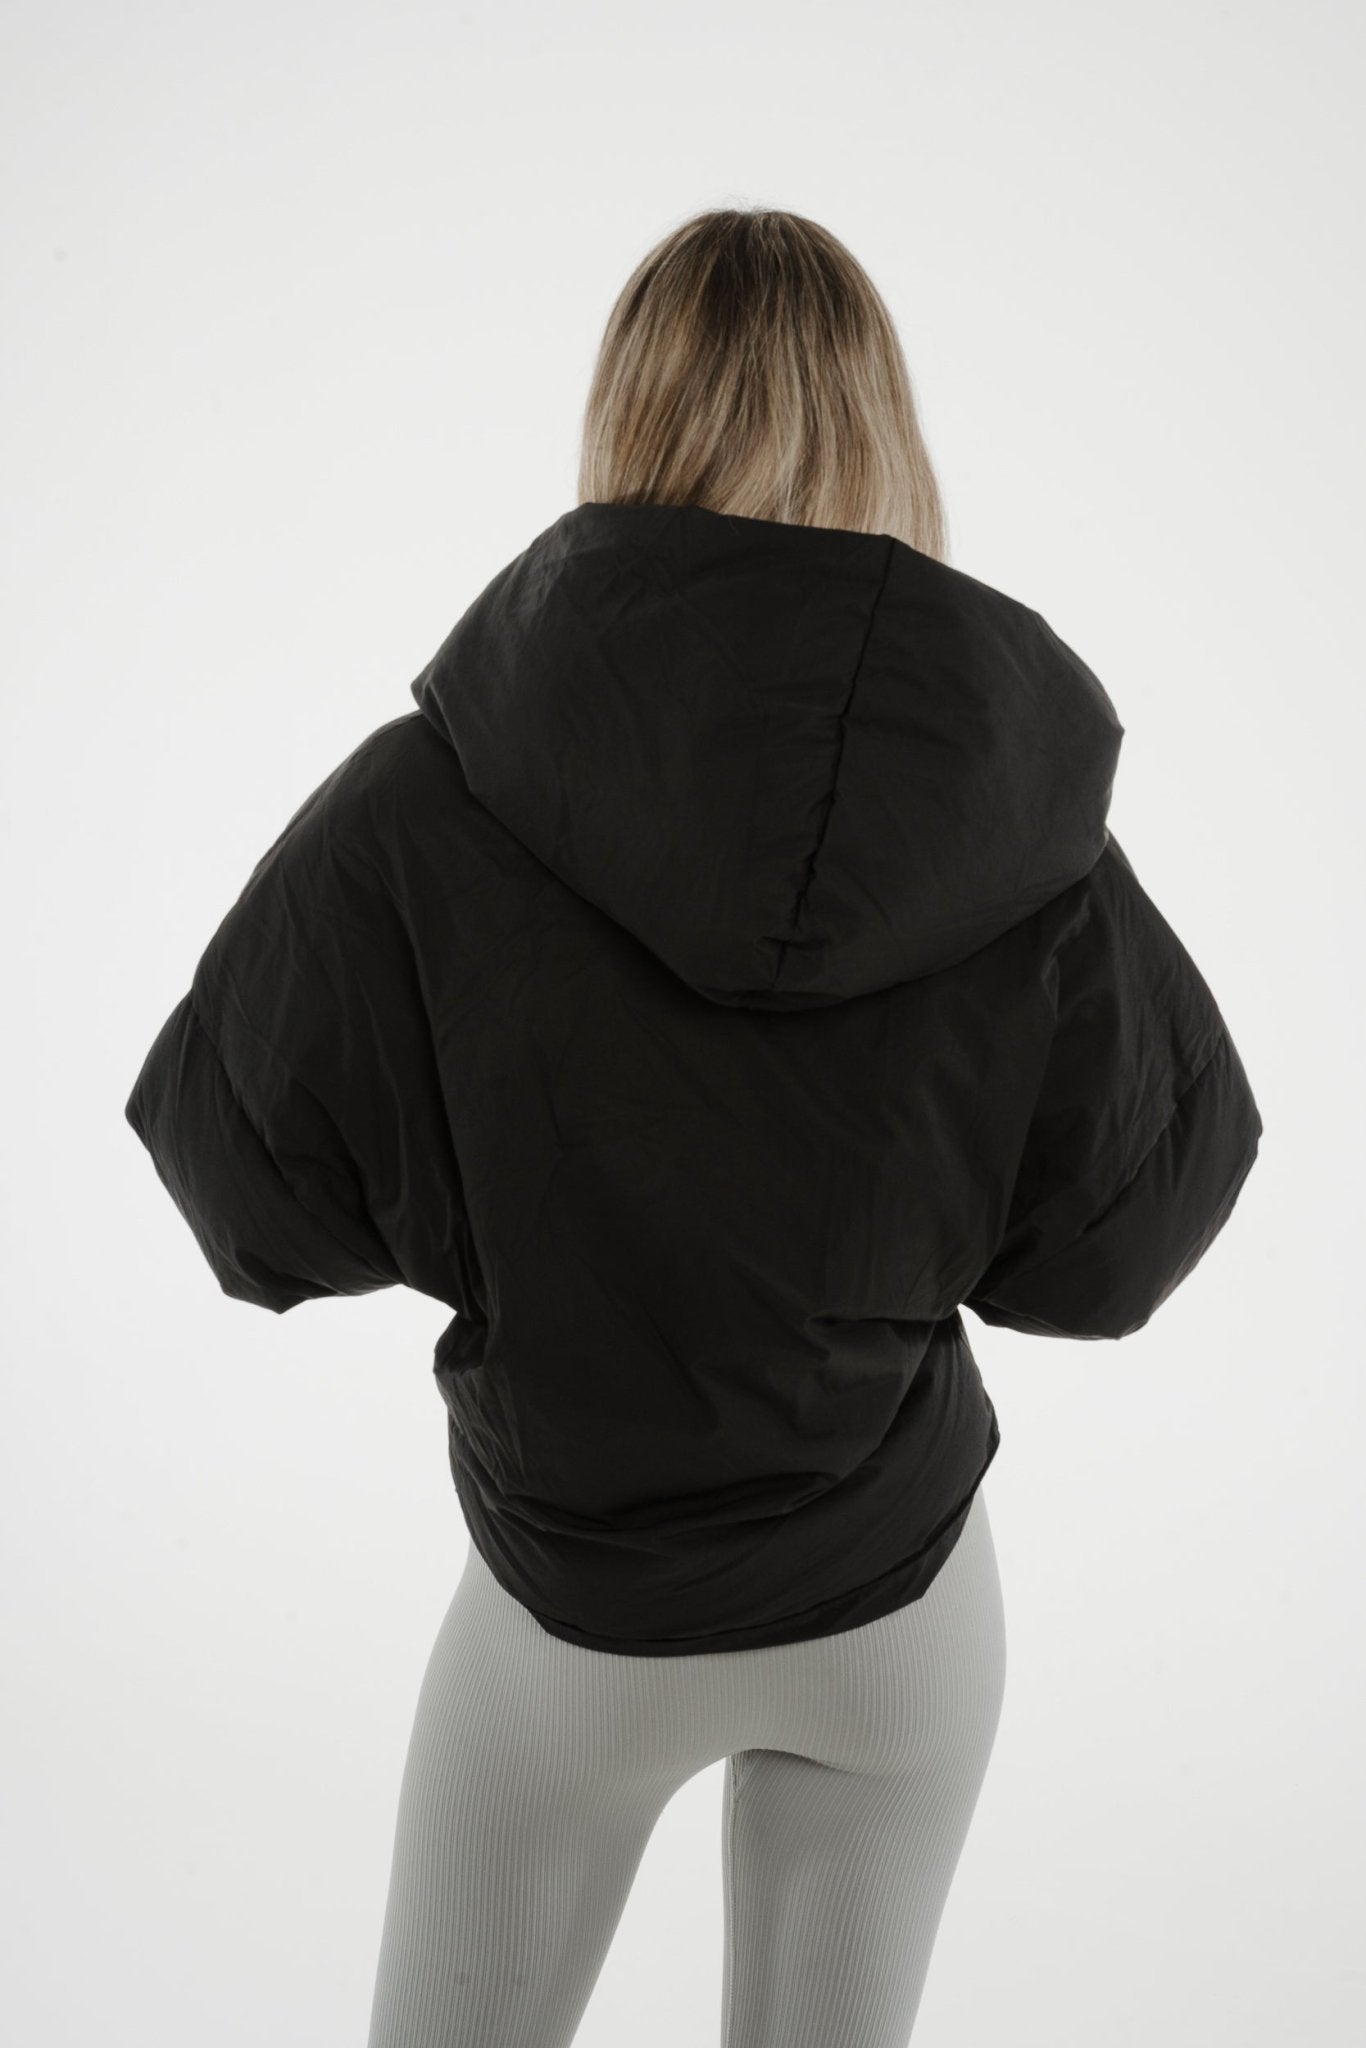 Cora Hooded Coat In Black - The Walk in Wardrobe